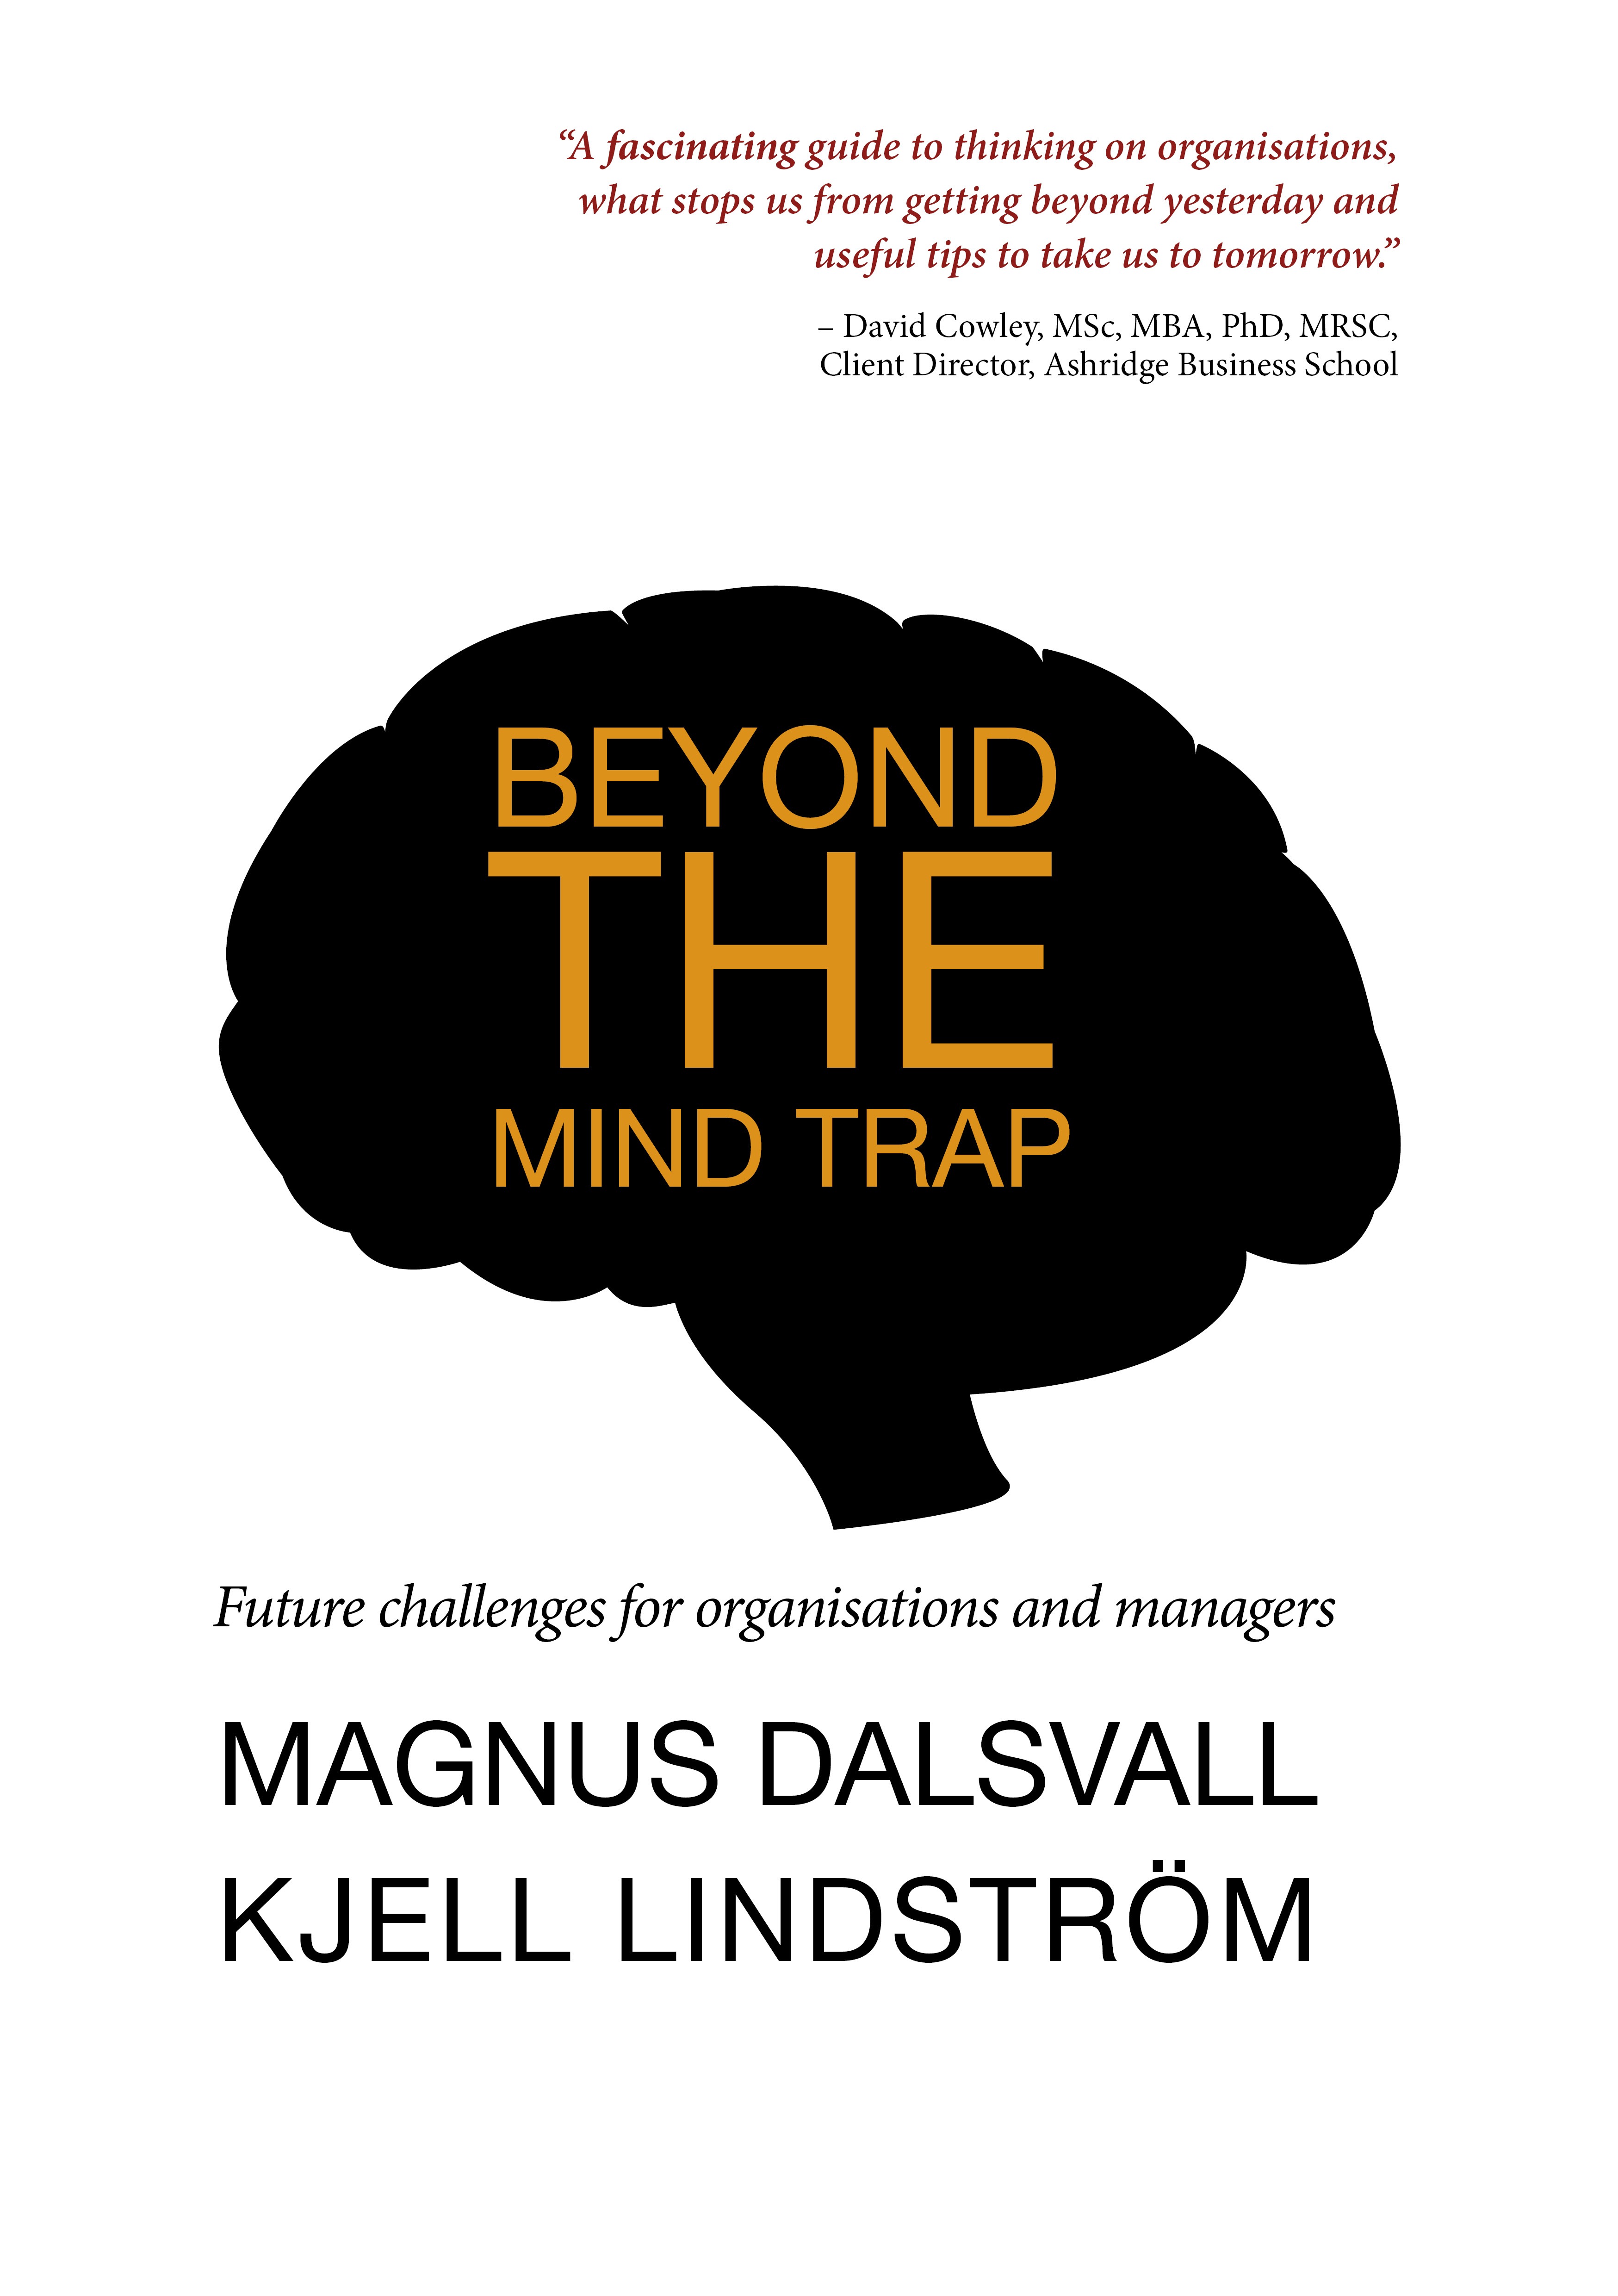 En mycket positiv recension av "Beyond the mind trap"